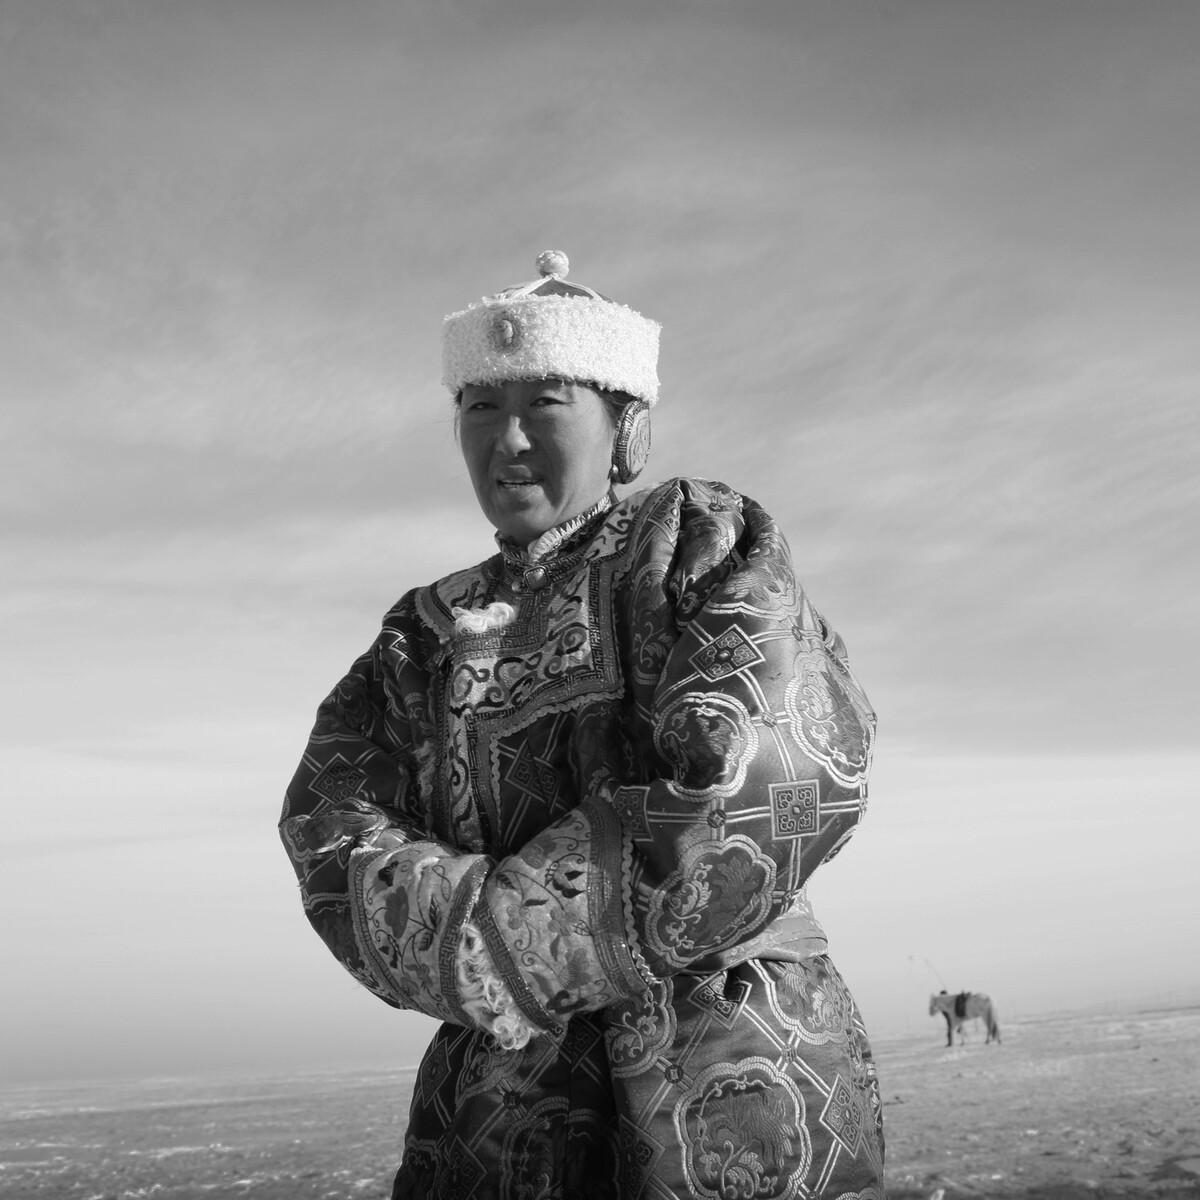 2007年11月拍摄于内蒙古锡林郭勒盟草原  寒冷的冬季